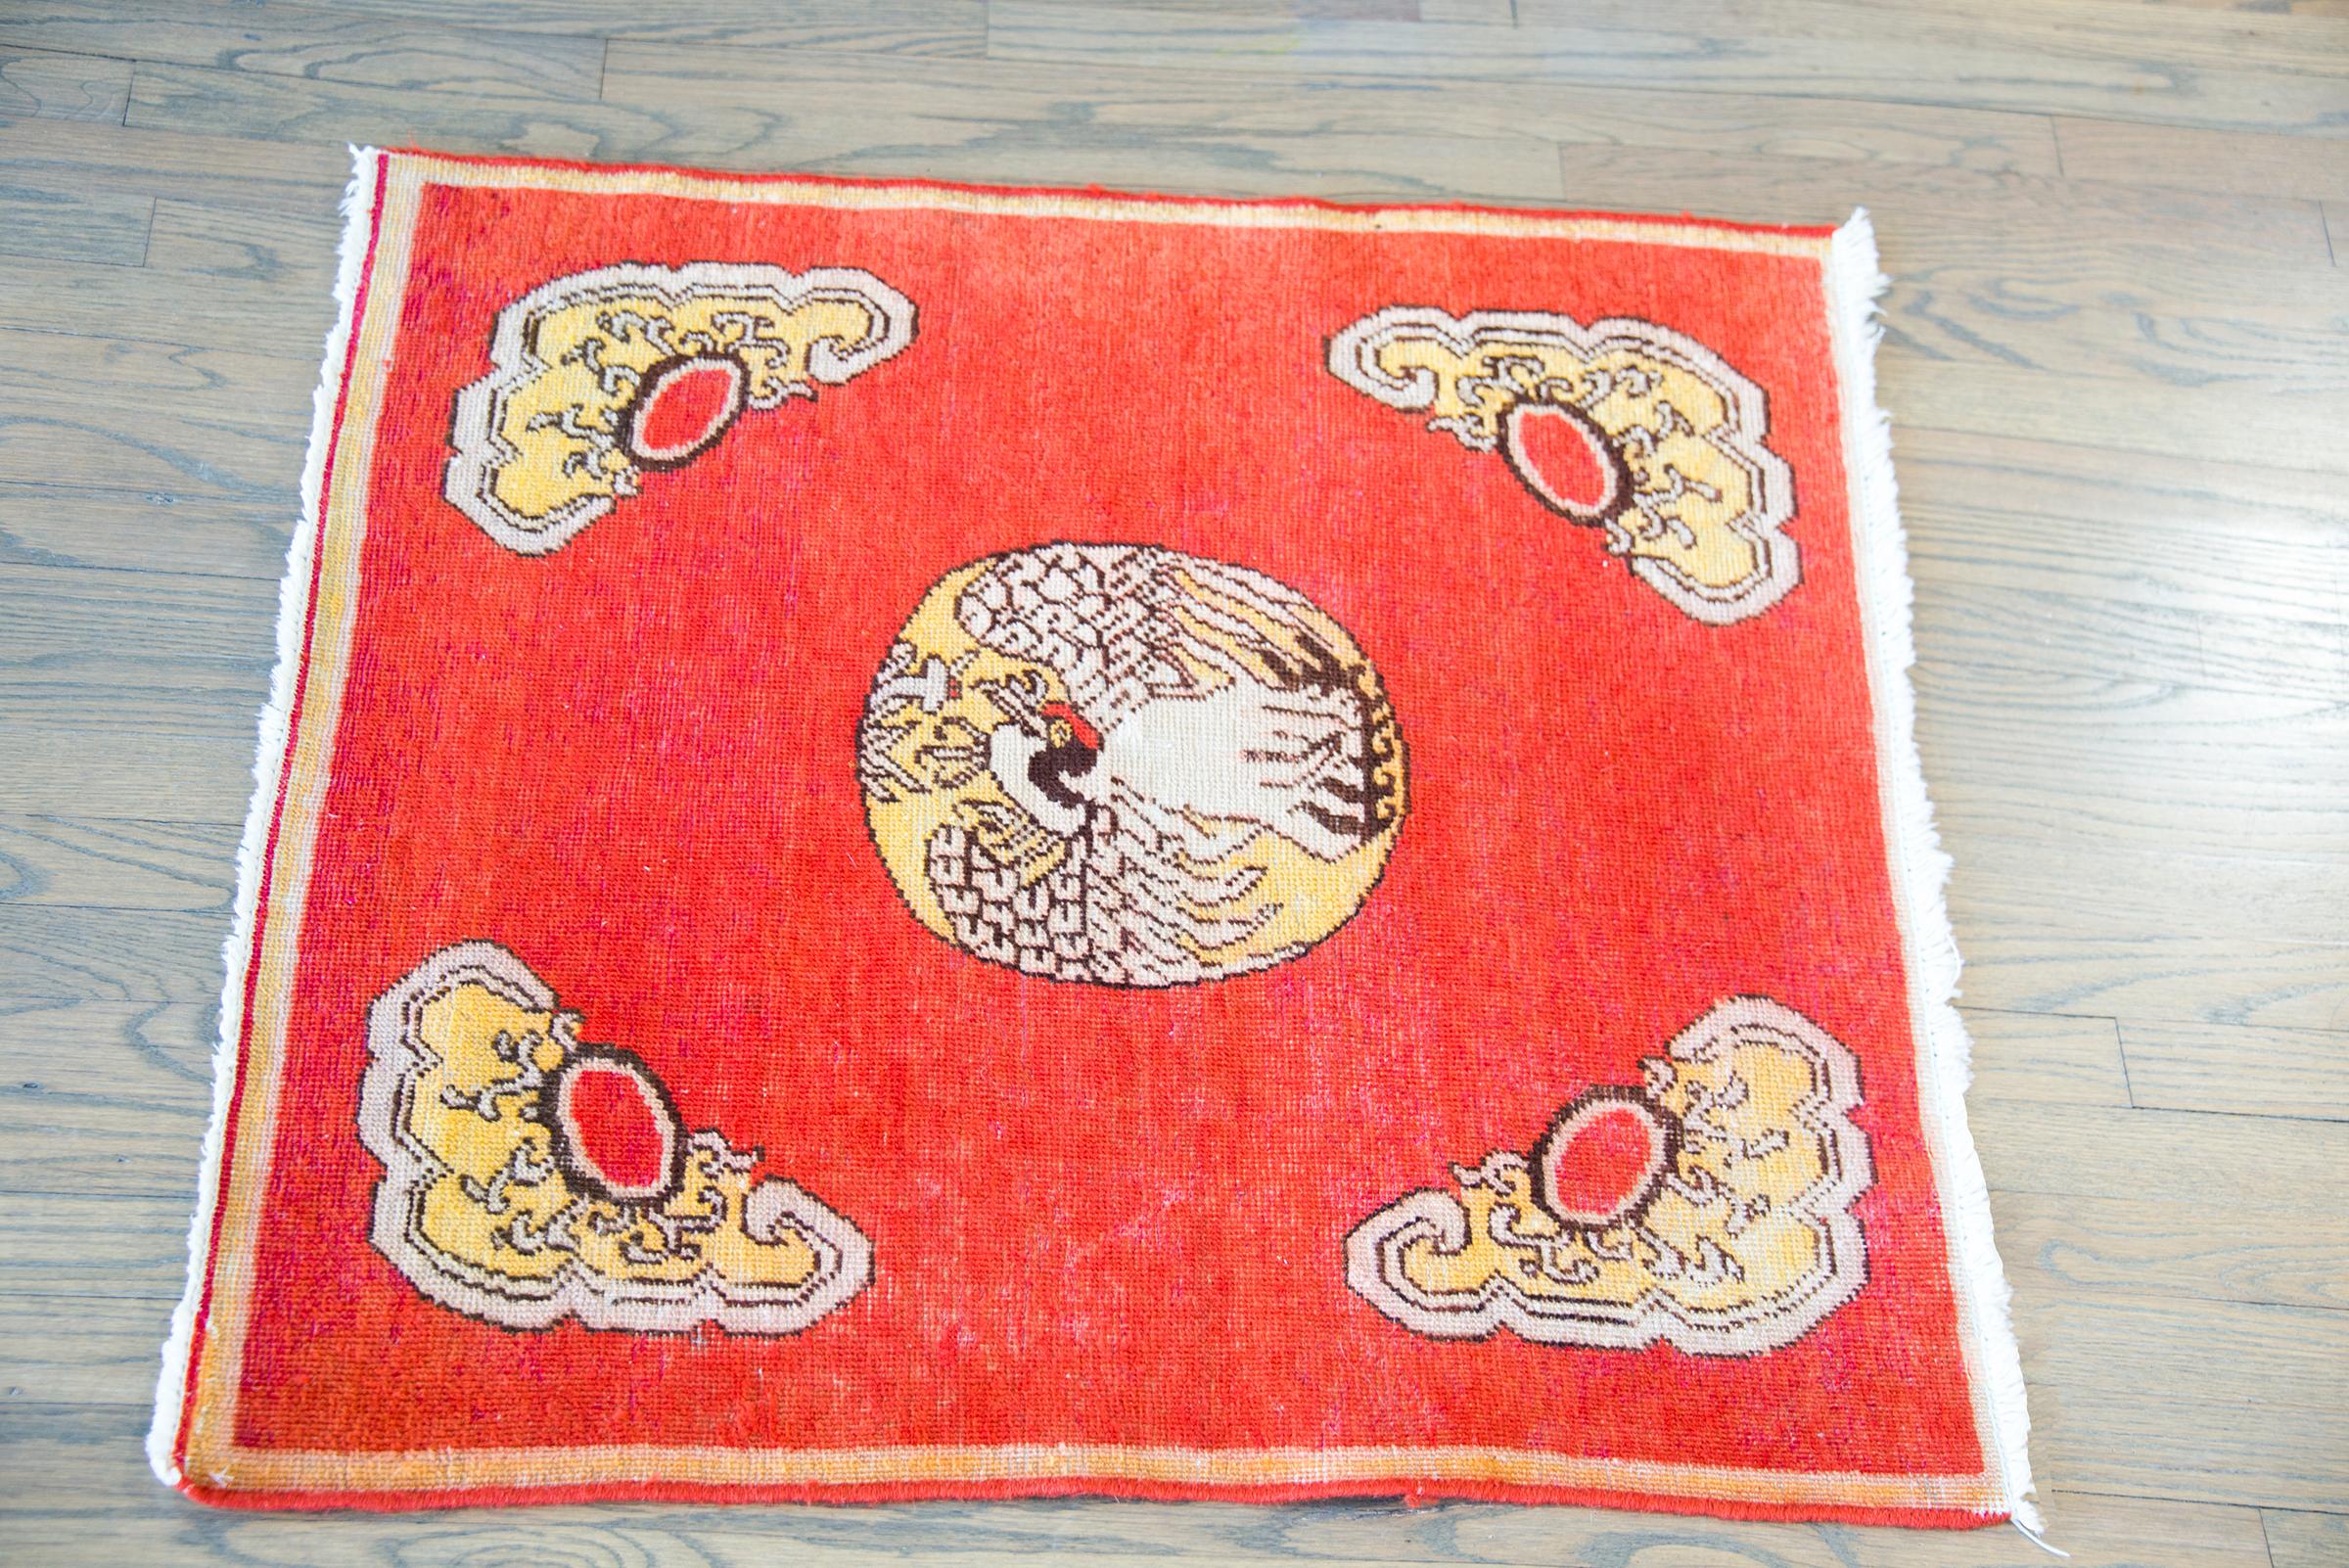 Ein bezaubernder zentralasiatischer Khotan-Teppich aus dem frühen 20. Jahrhundert, der einem traditionellen chinesischen Rangabzeichen nachempfunden ist, mit einem großen Schwan in der Mitte und wolkenförmigen Formen in jeder Ecke, und das alles vor